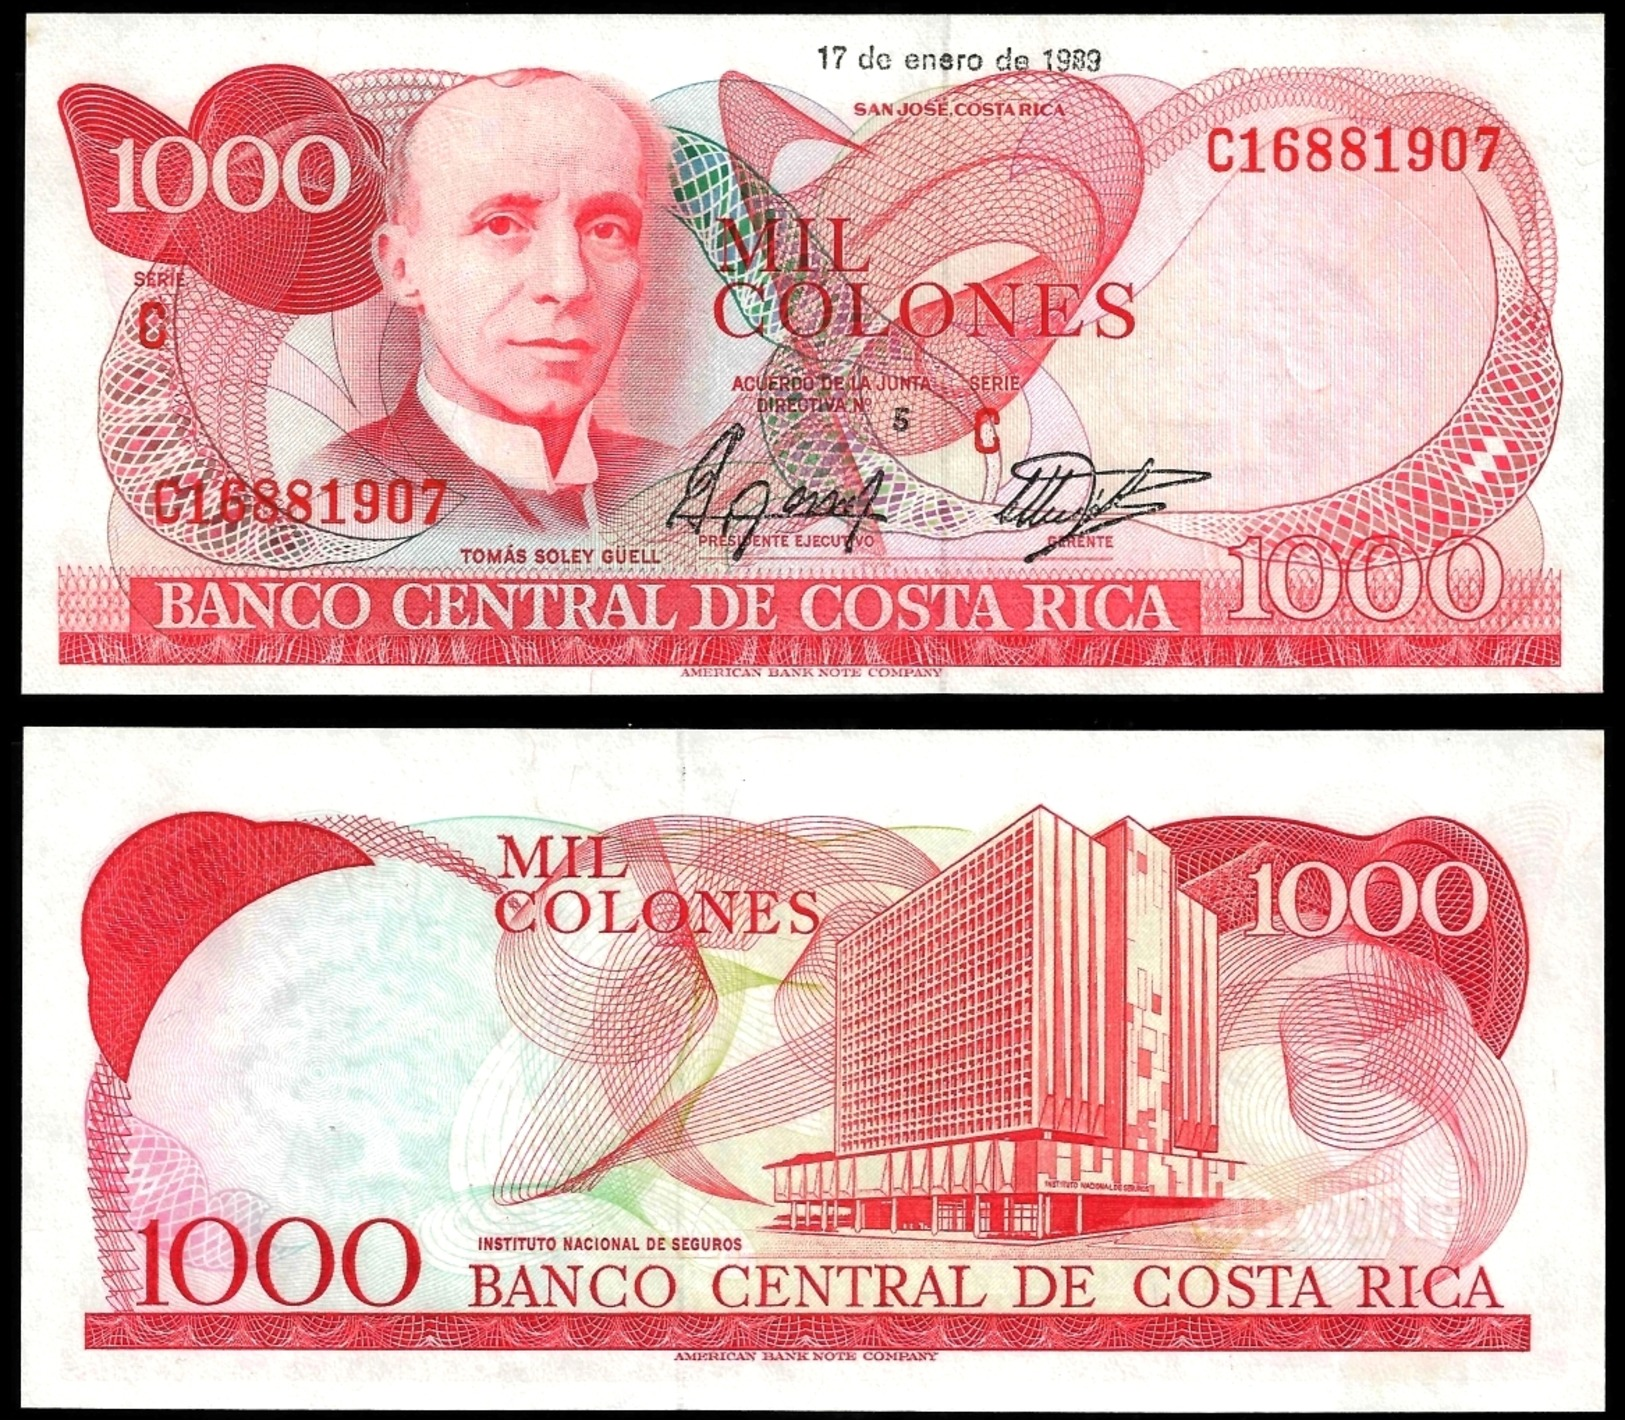 Costa Rica 1000 COLONES 17.1.1989 P 256 UNC - Costa Rica